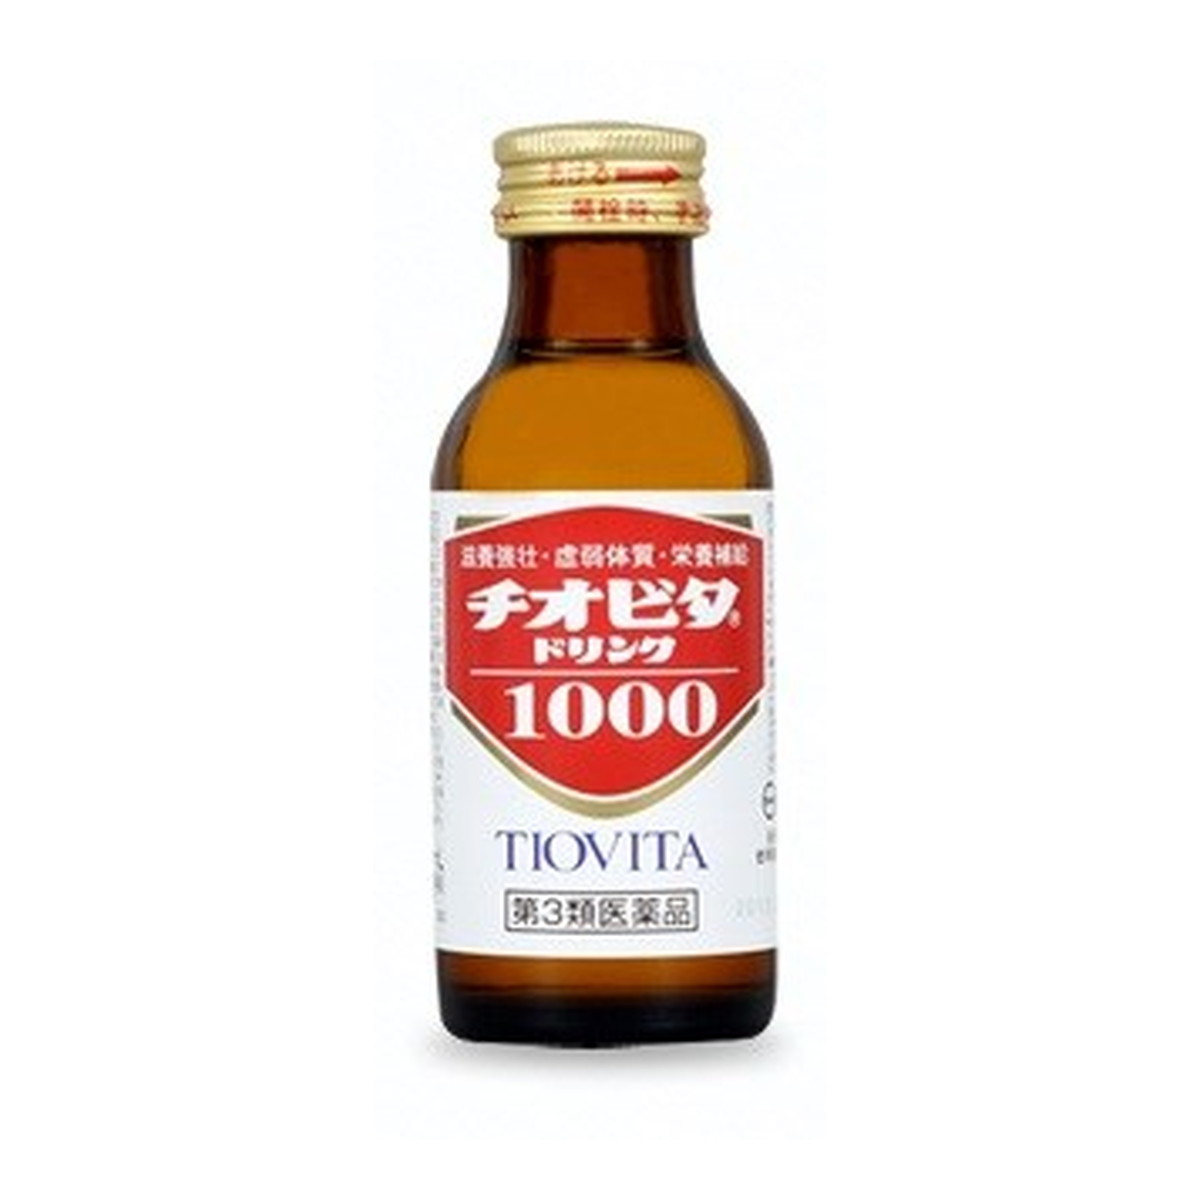 【第3類医薬品】大鵬薬品 チオビタドリンク1000 (100ml)